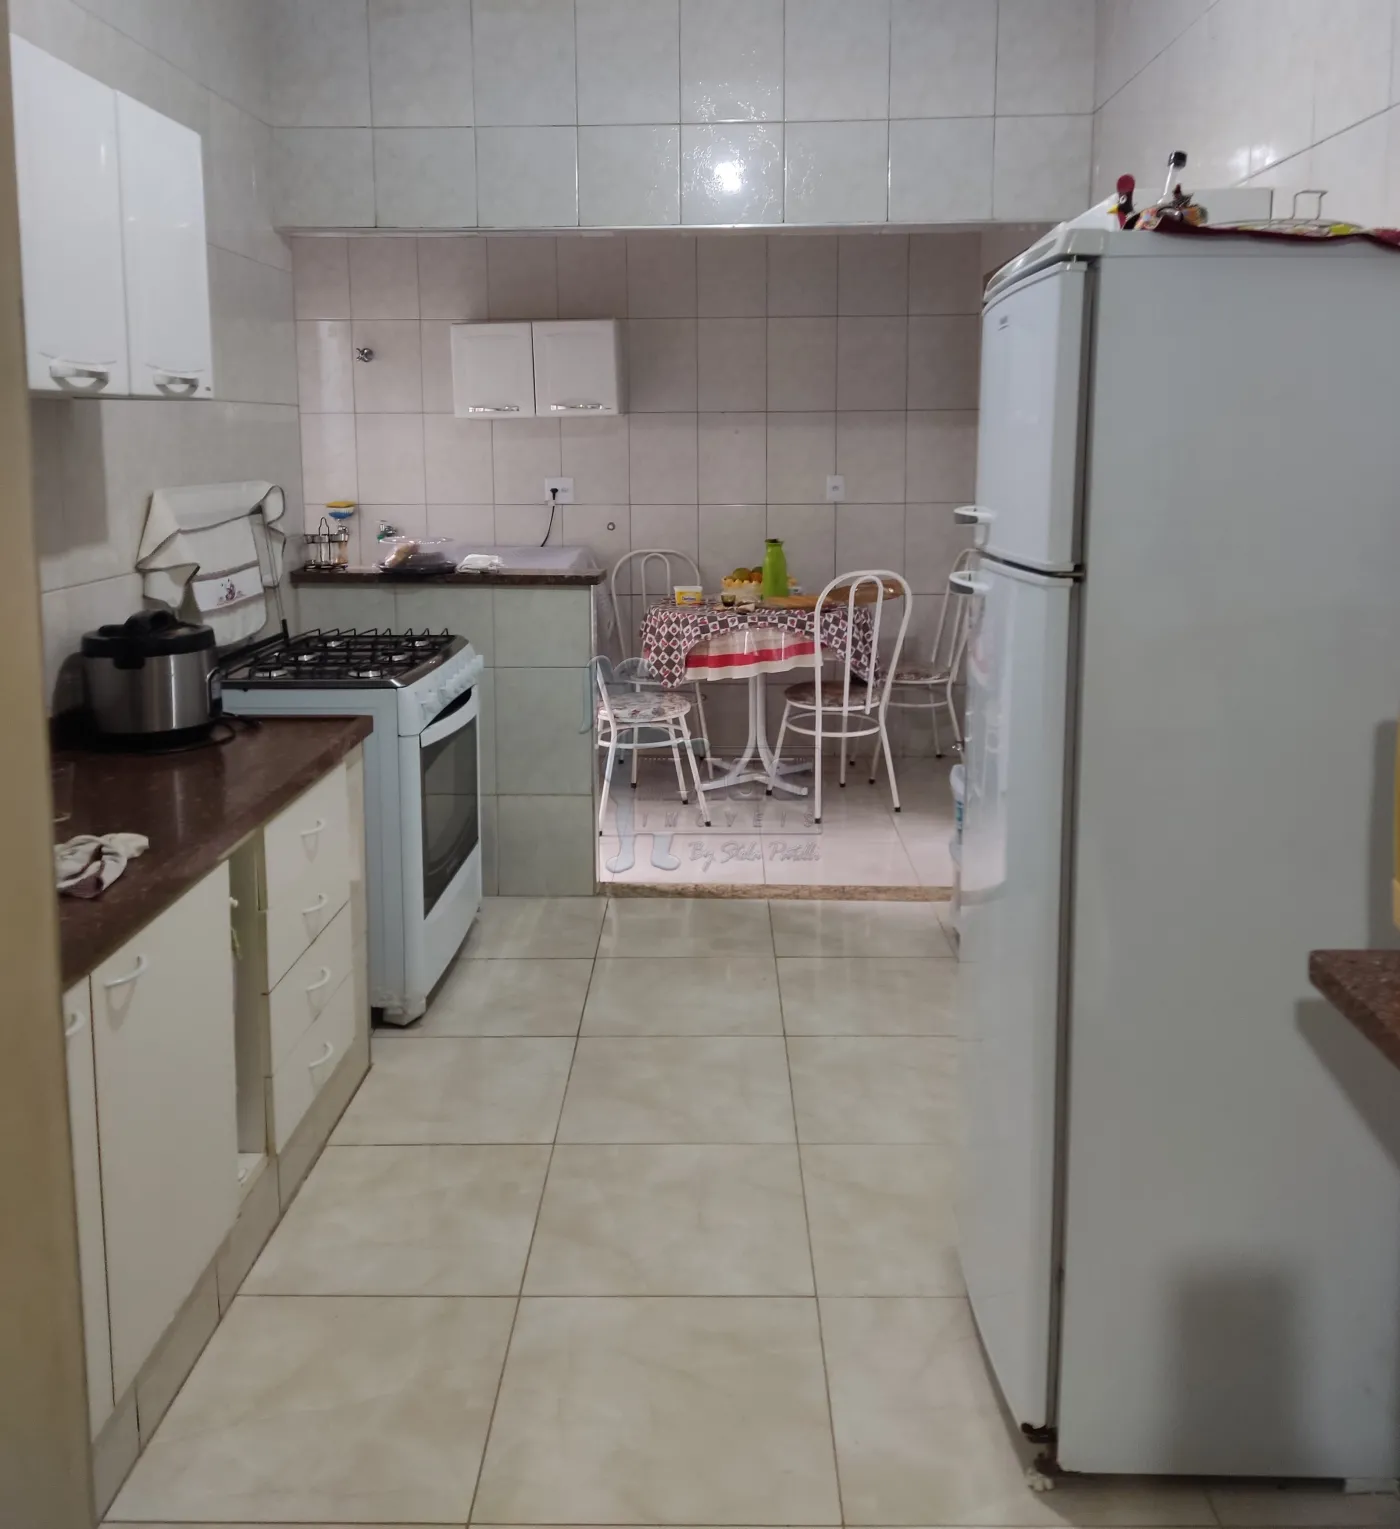 Alugar Casas / Padrão em Ribeirão Preto R$ 2.500,00 - Foto 13